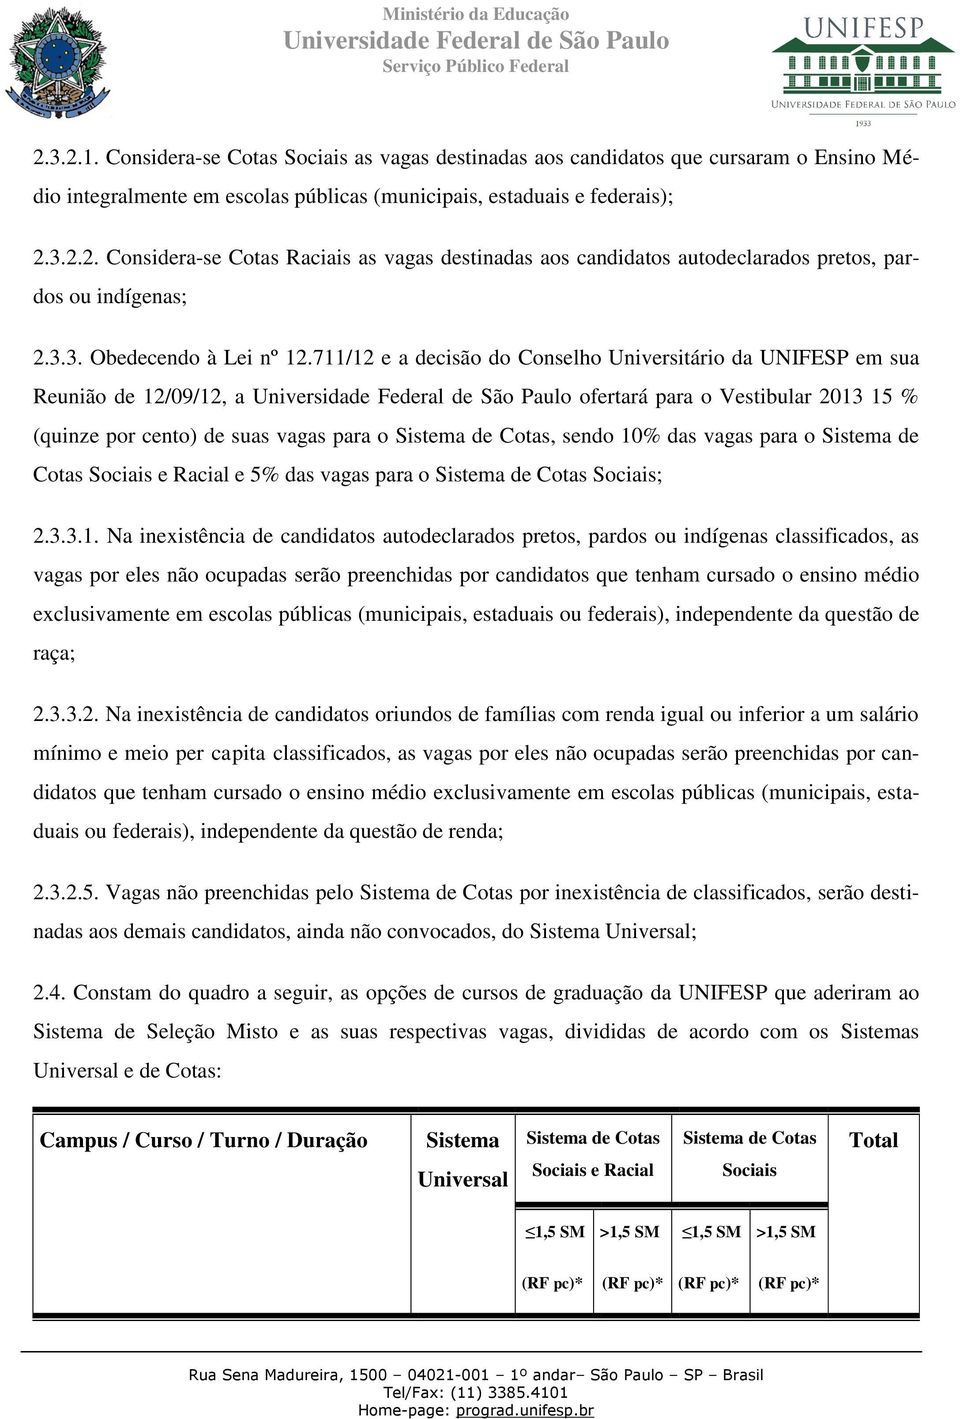 711/12 e a decisão do Conselho Universitário da UNIFESP em sua Reunião de 12/09/12, a ofertará para o Vestibular 2013 15 % (quinze por cento) de suas vagas para o Sistema de Cotas, sendo 10% das